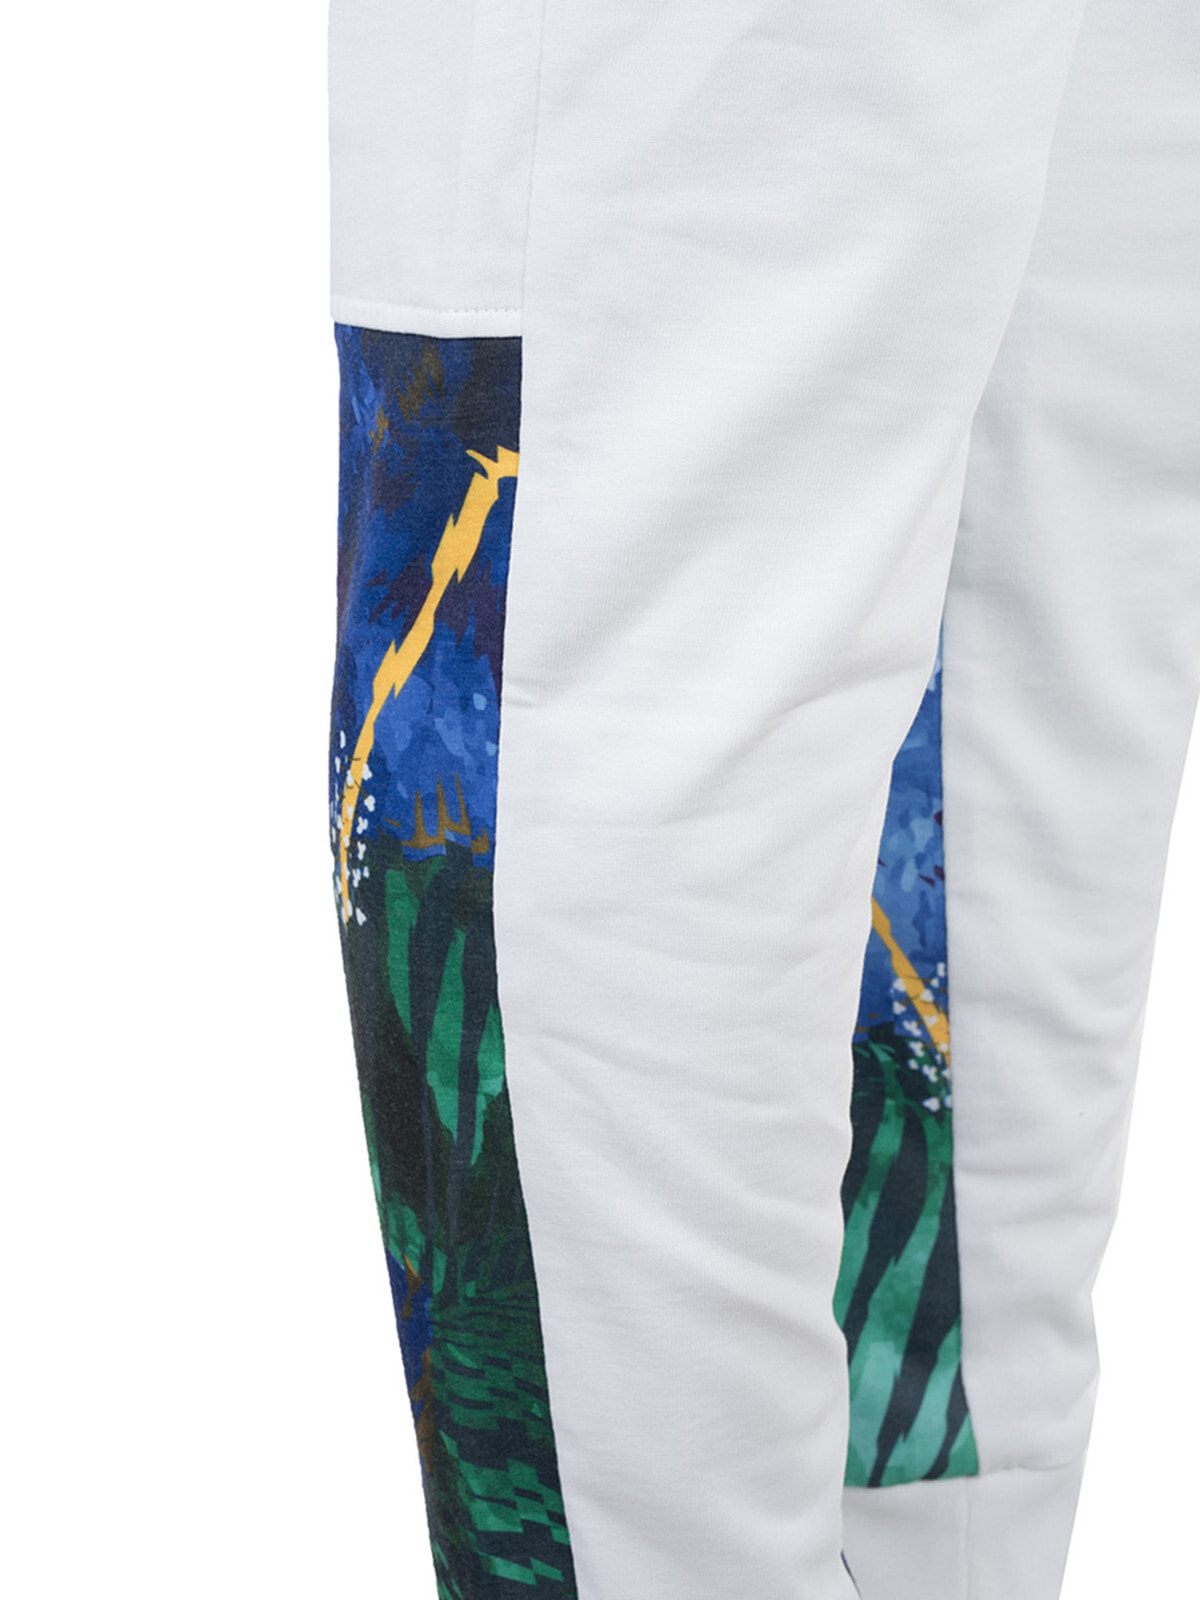 Мужские брюки спортивные белые зауженные летние трикотажные на резинкеджоггеры Bikkembergs Spodnie размер L — купить недорого с доставкой, 48713